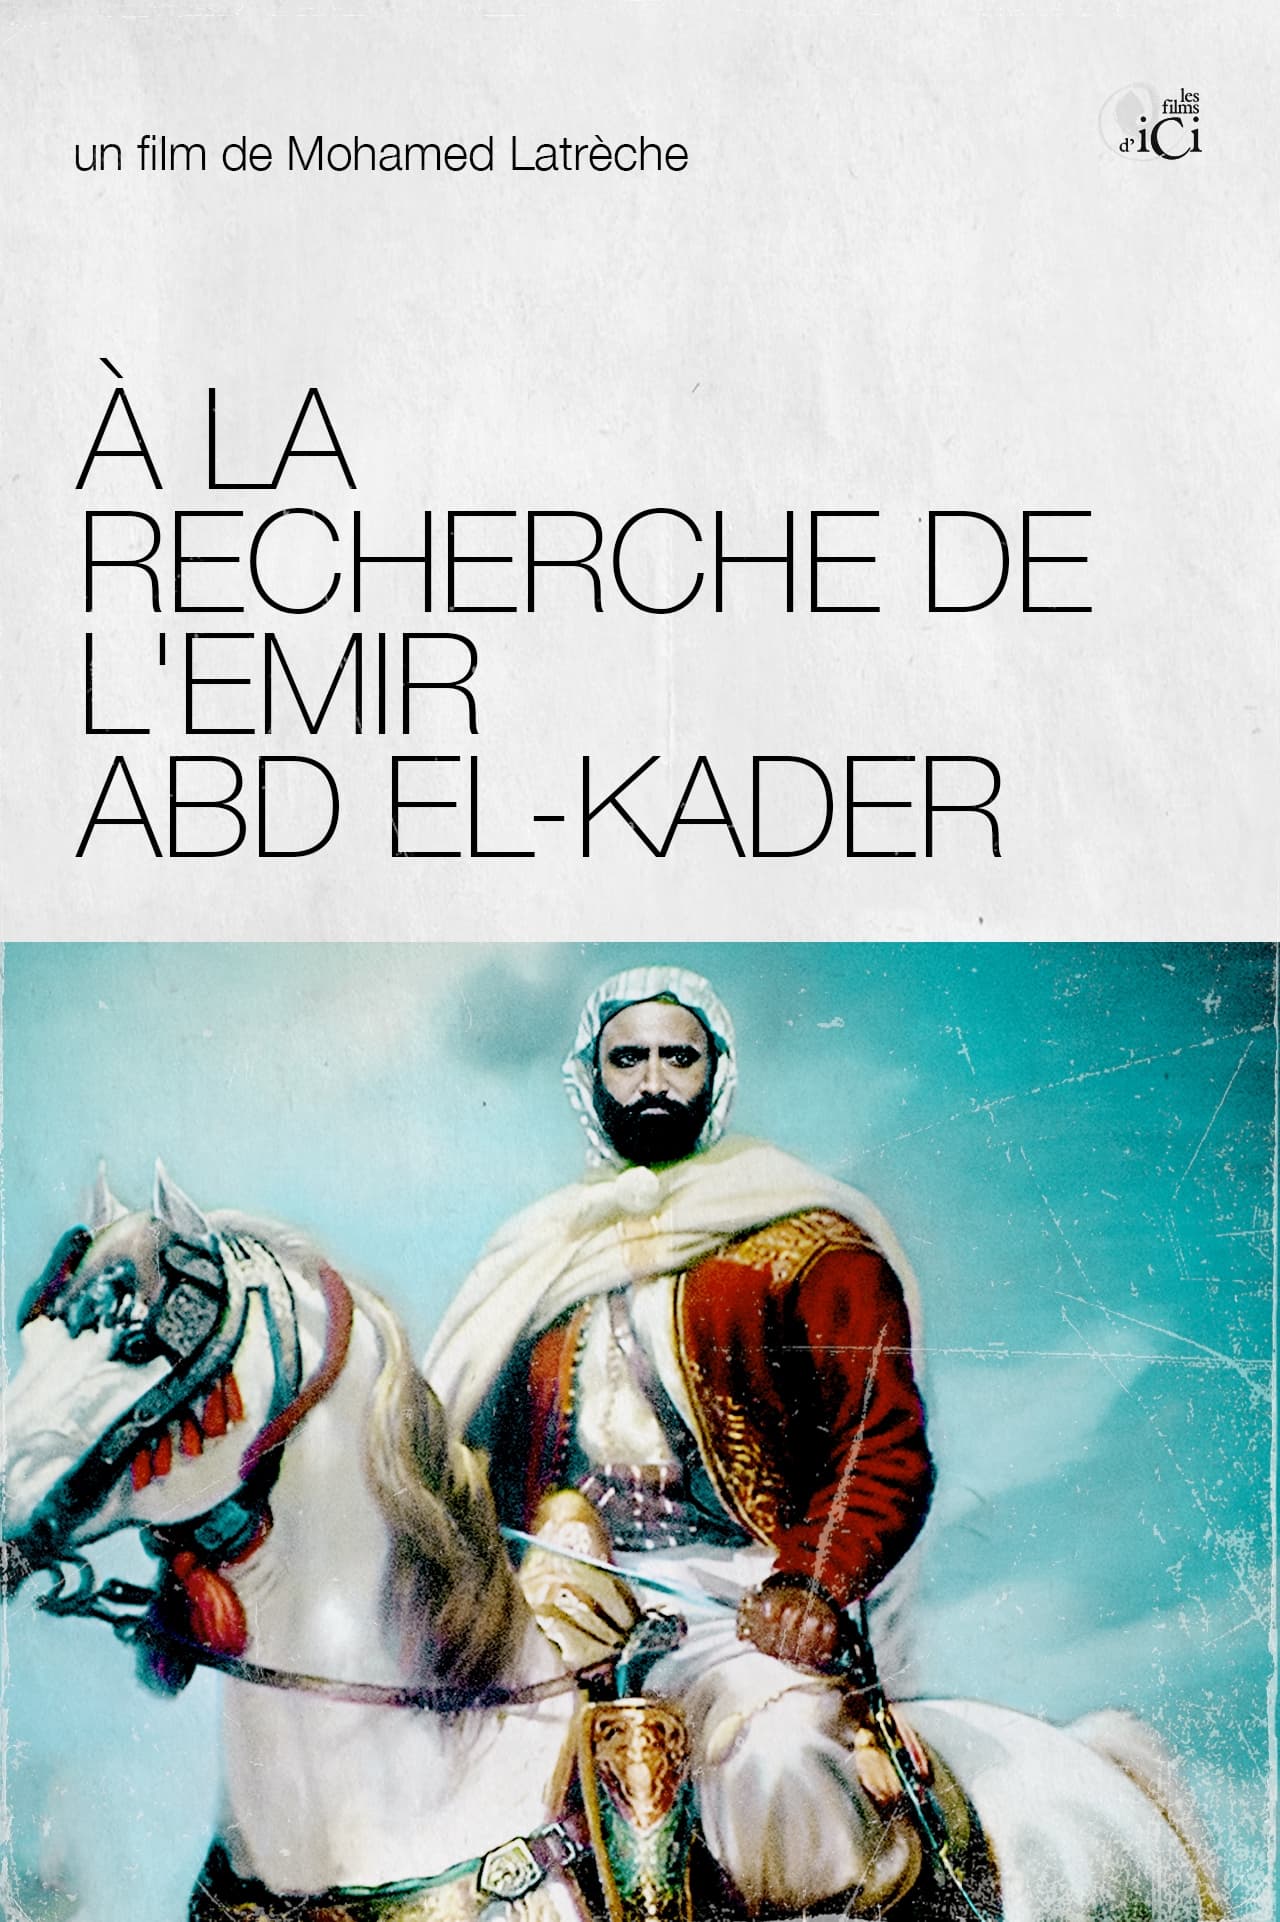 On The Trail Of Emir Abd El-Kader